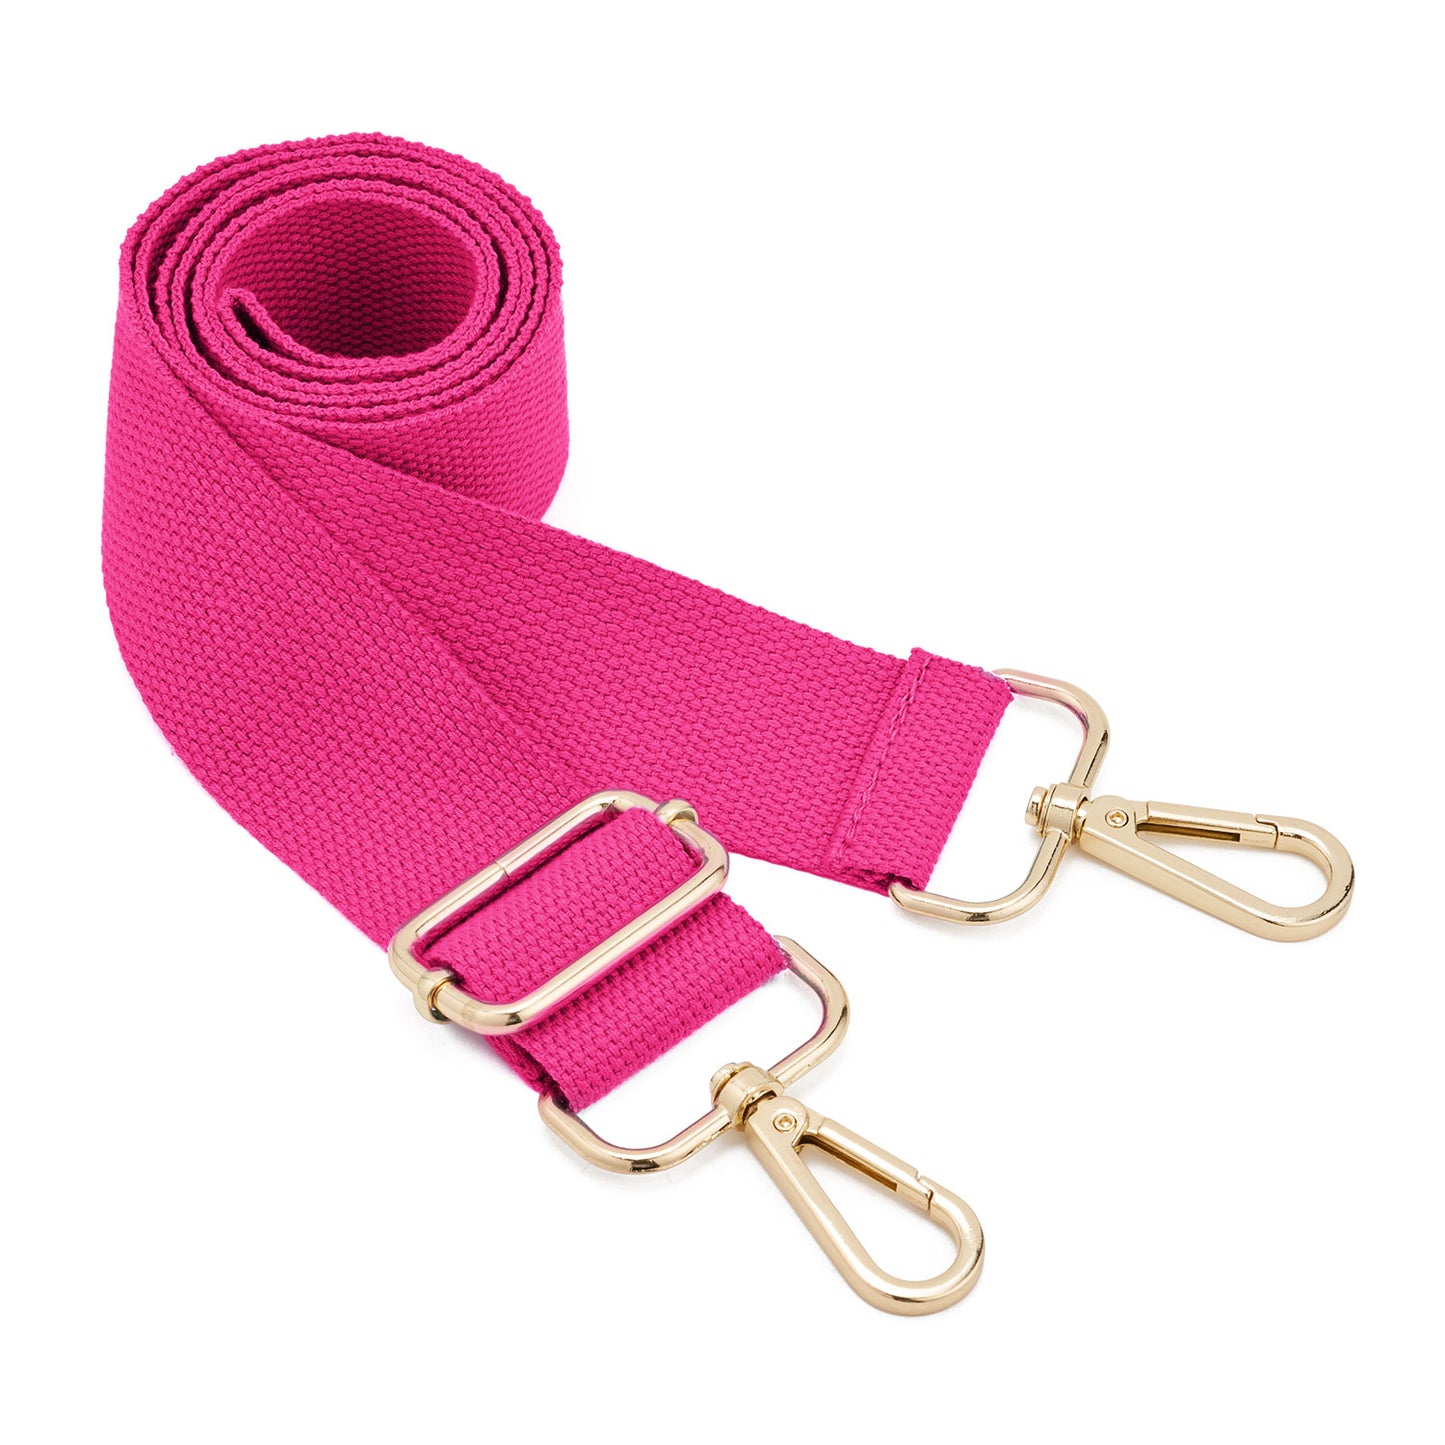 Bag Strap Detachable Shoulder Strap attachable Bag Strap for | Etsy | Bag  straps, Bags, Purse strap